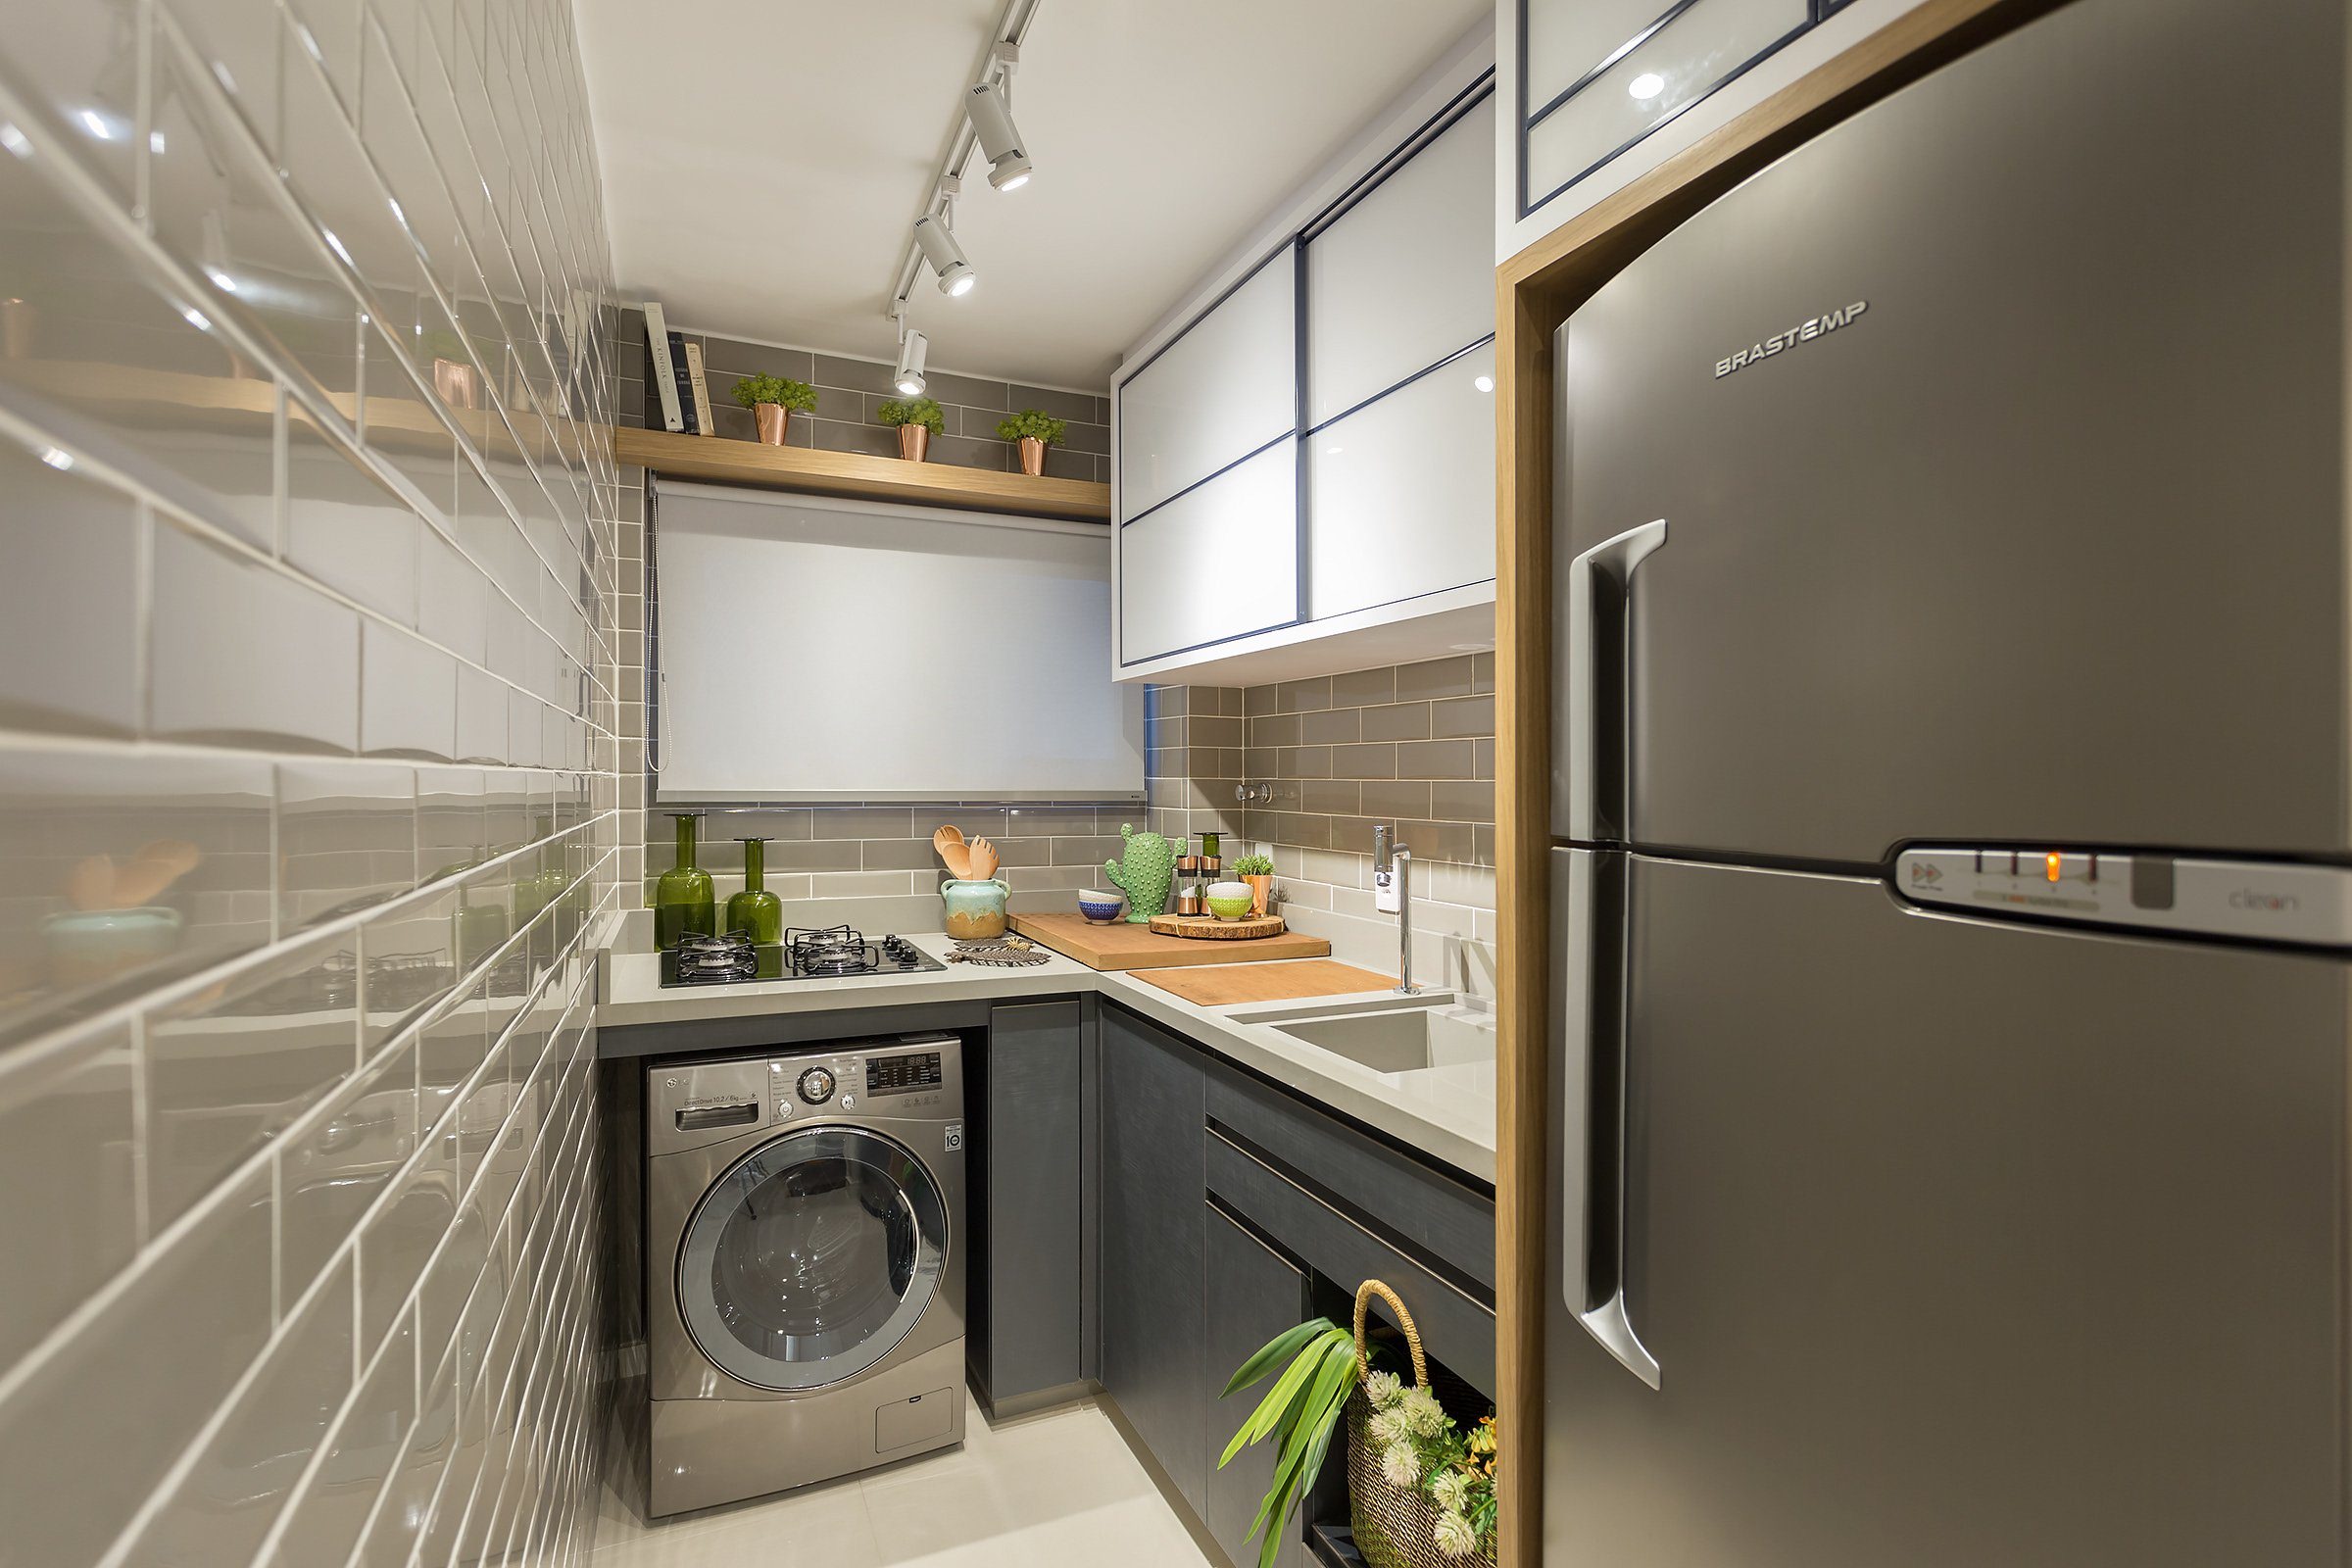 Гениальное использование пространства: на винтажной кухне используется вся площадь без остатка